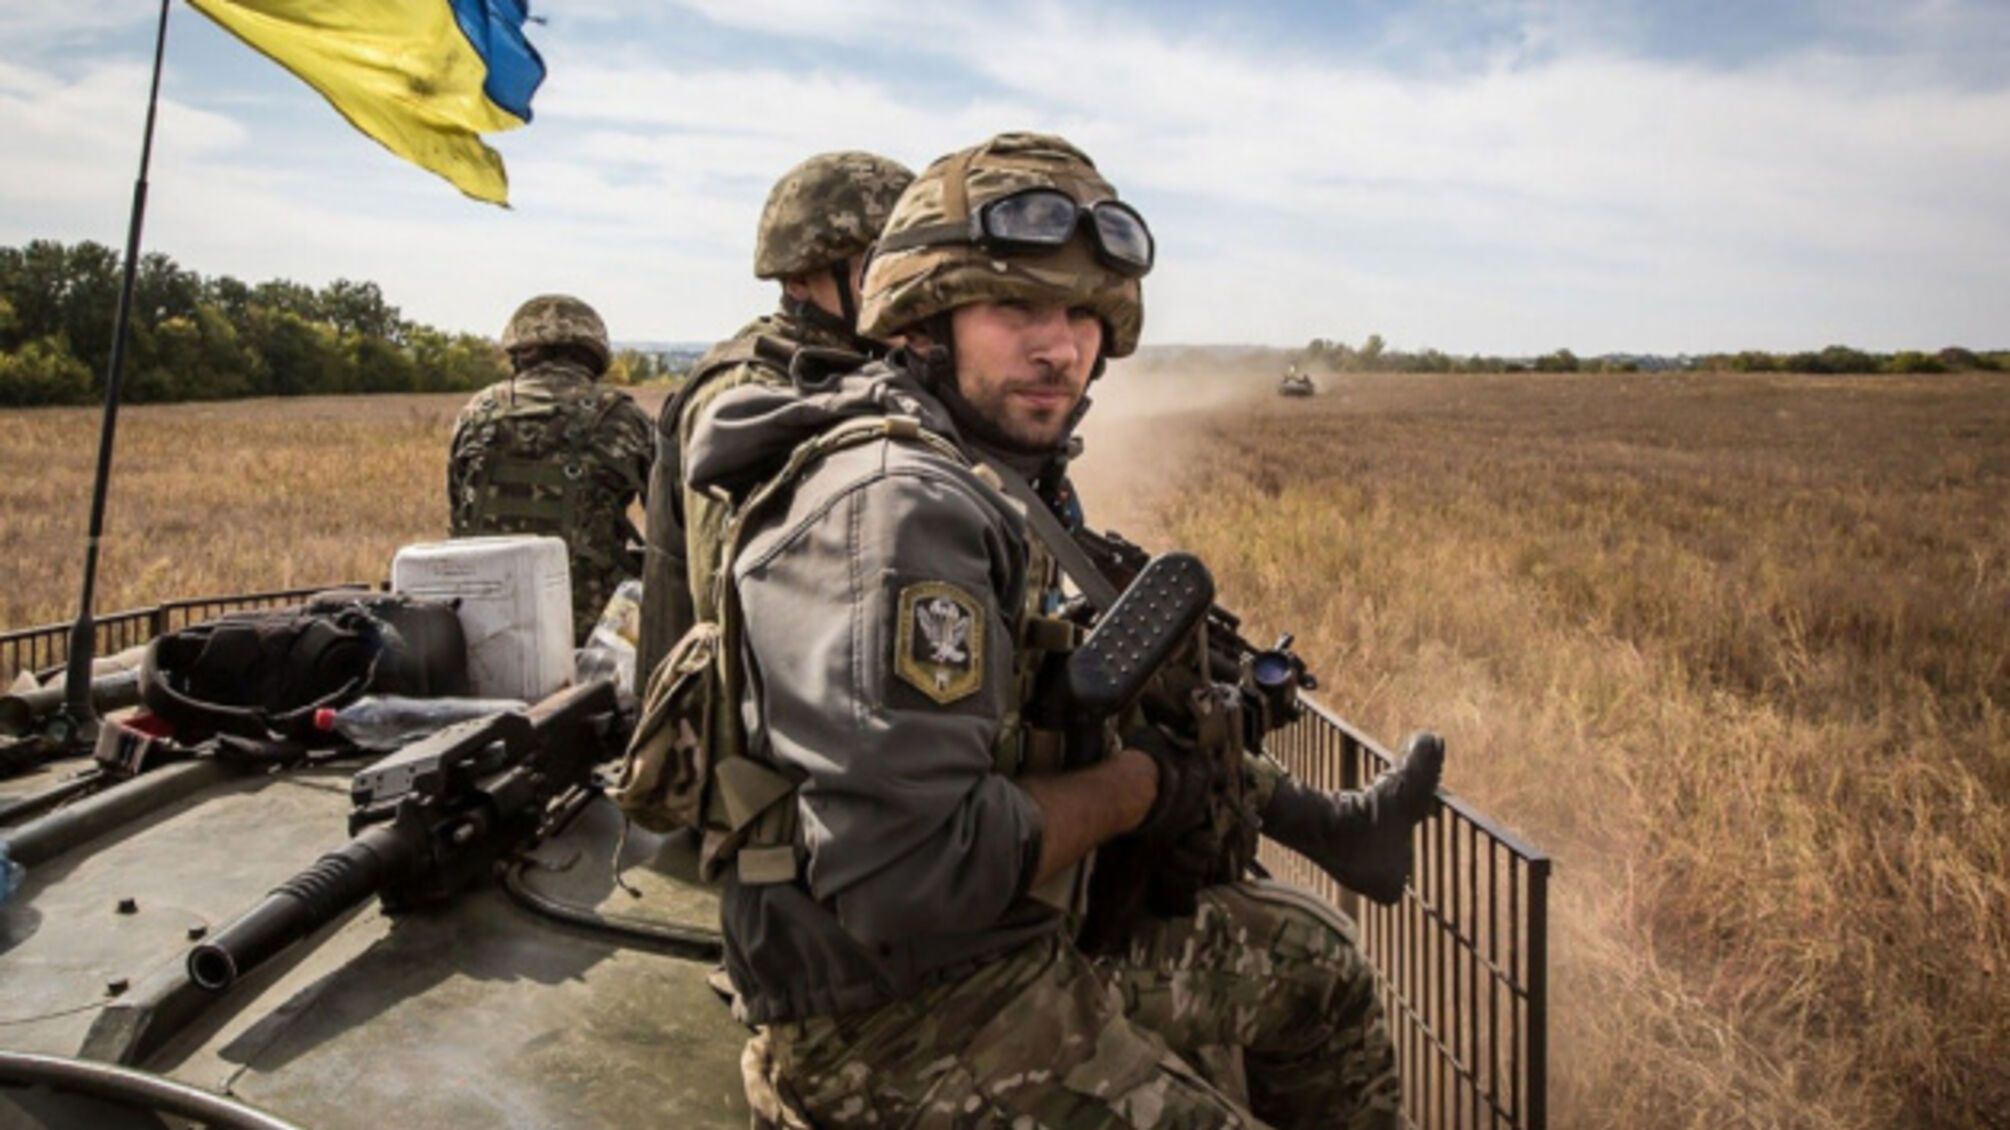  Окупаційні війська росії обстрілюють територію України з різних видів зброї